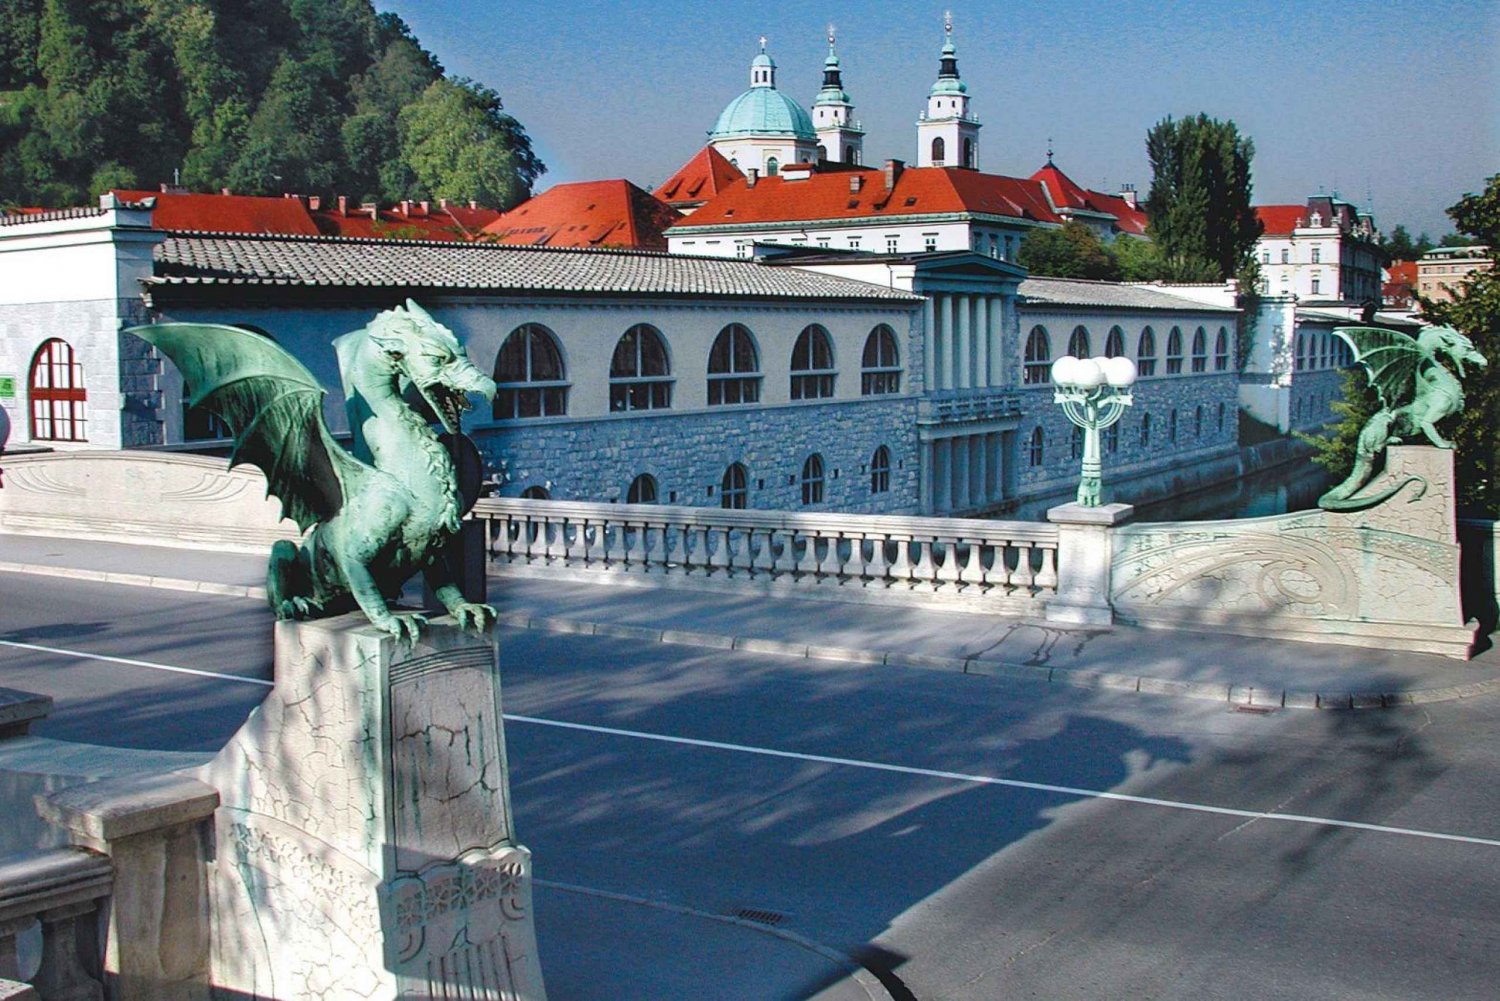 Visite guidée de Ljubljana avec un historien de l'art et un guide touristique